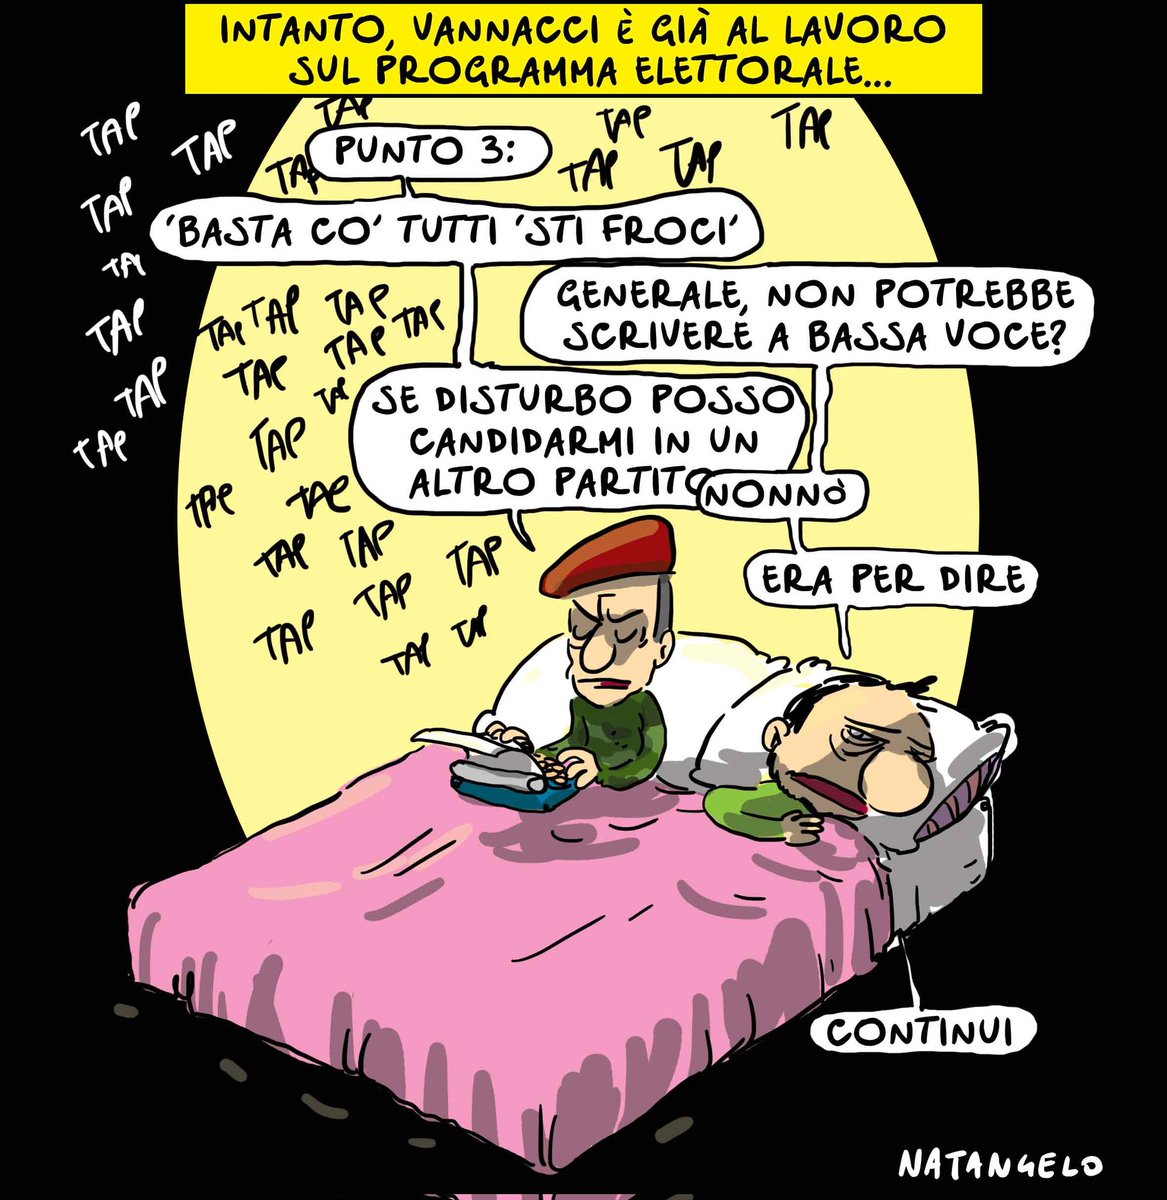 Intanto, in casa Salvini... - la mia vignetta per Il Fatto Quotidiano in edicola! 

#lega #vannacci #salvini #vignetta #fumetto #memeitaliani #umorismo #satira #humor #natangelo